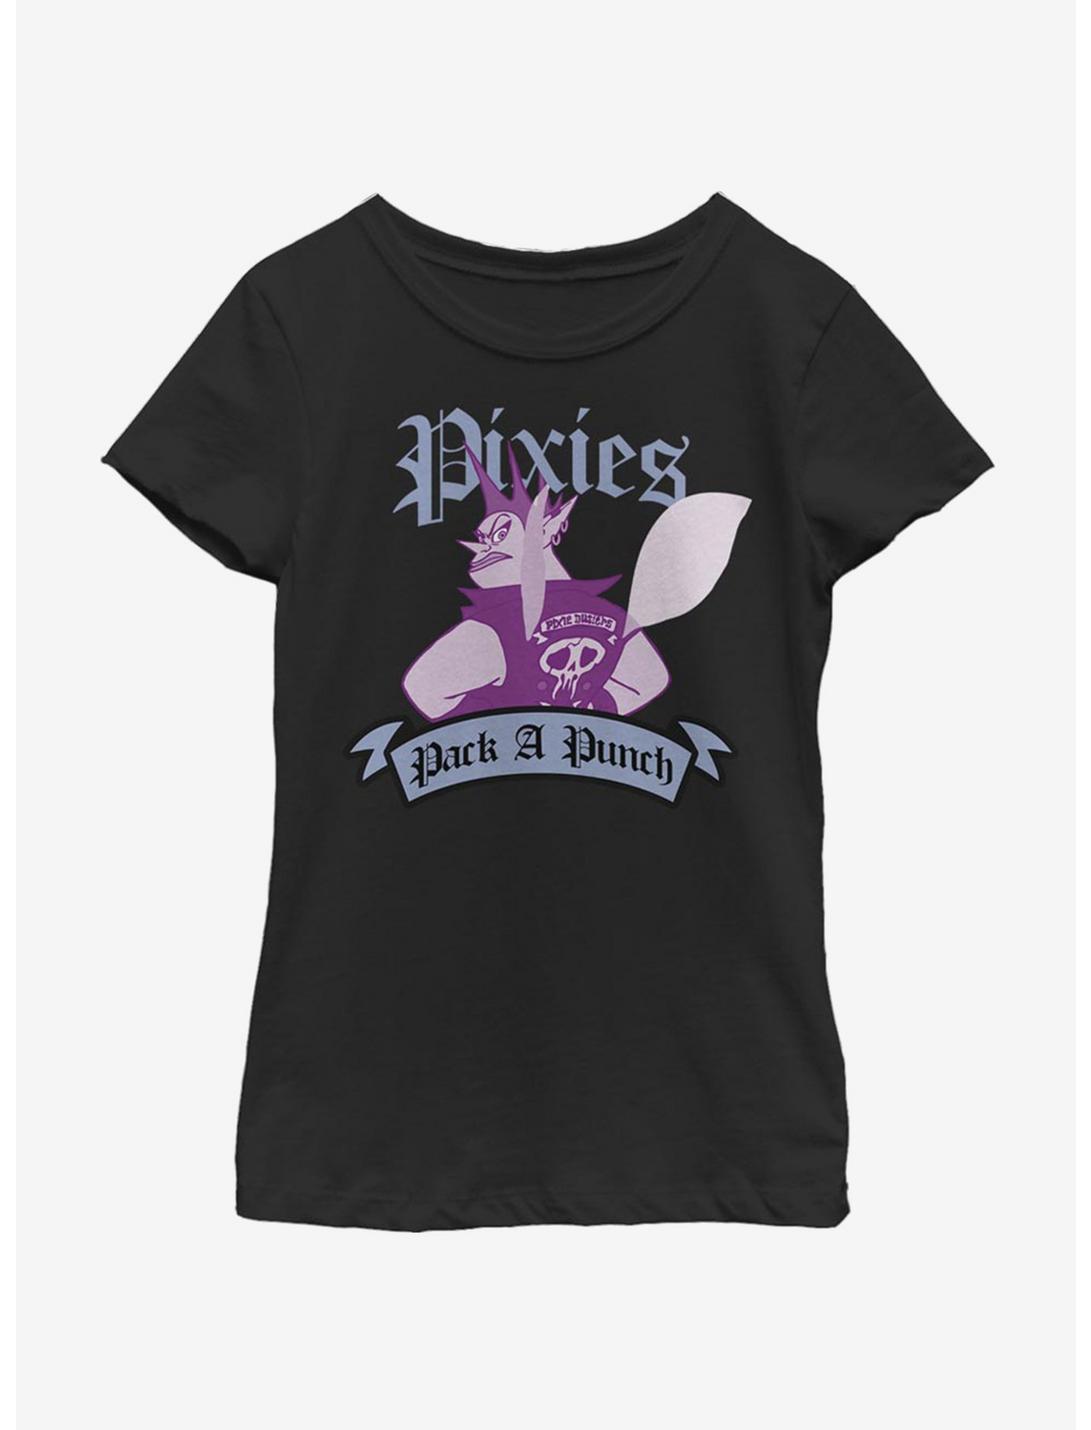 Disney Pixar Onward Pixie Punch Youth Girls T-Shirt, BLACK, hi-res